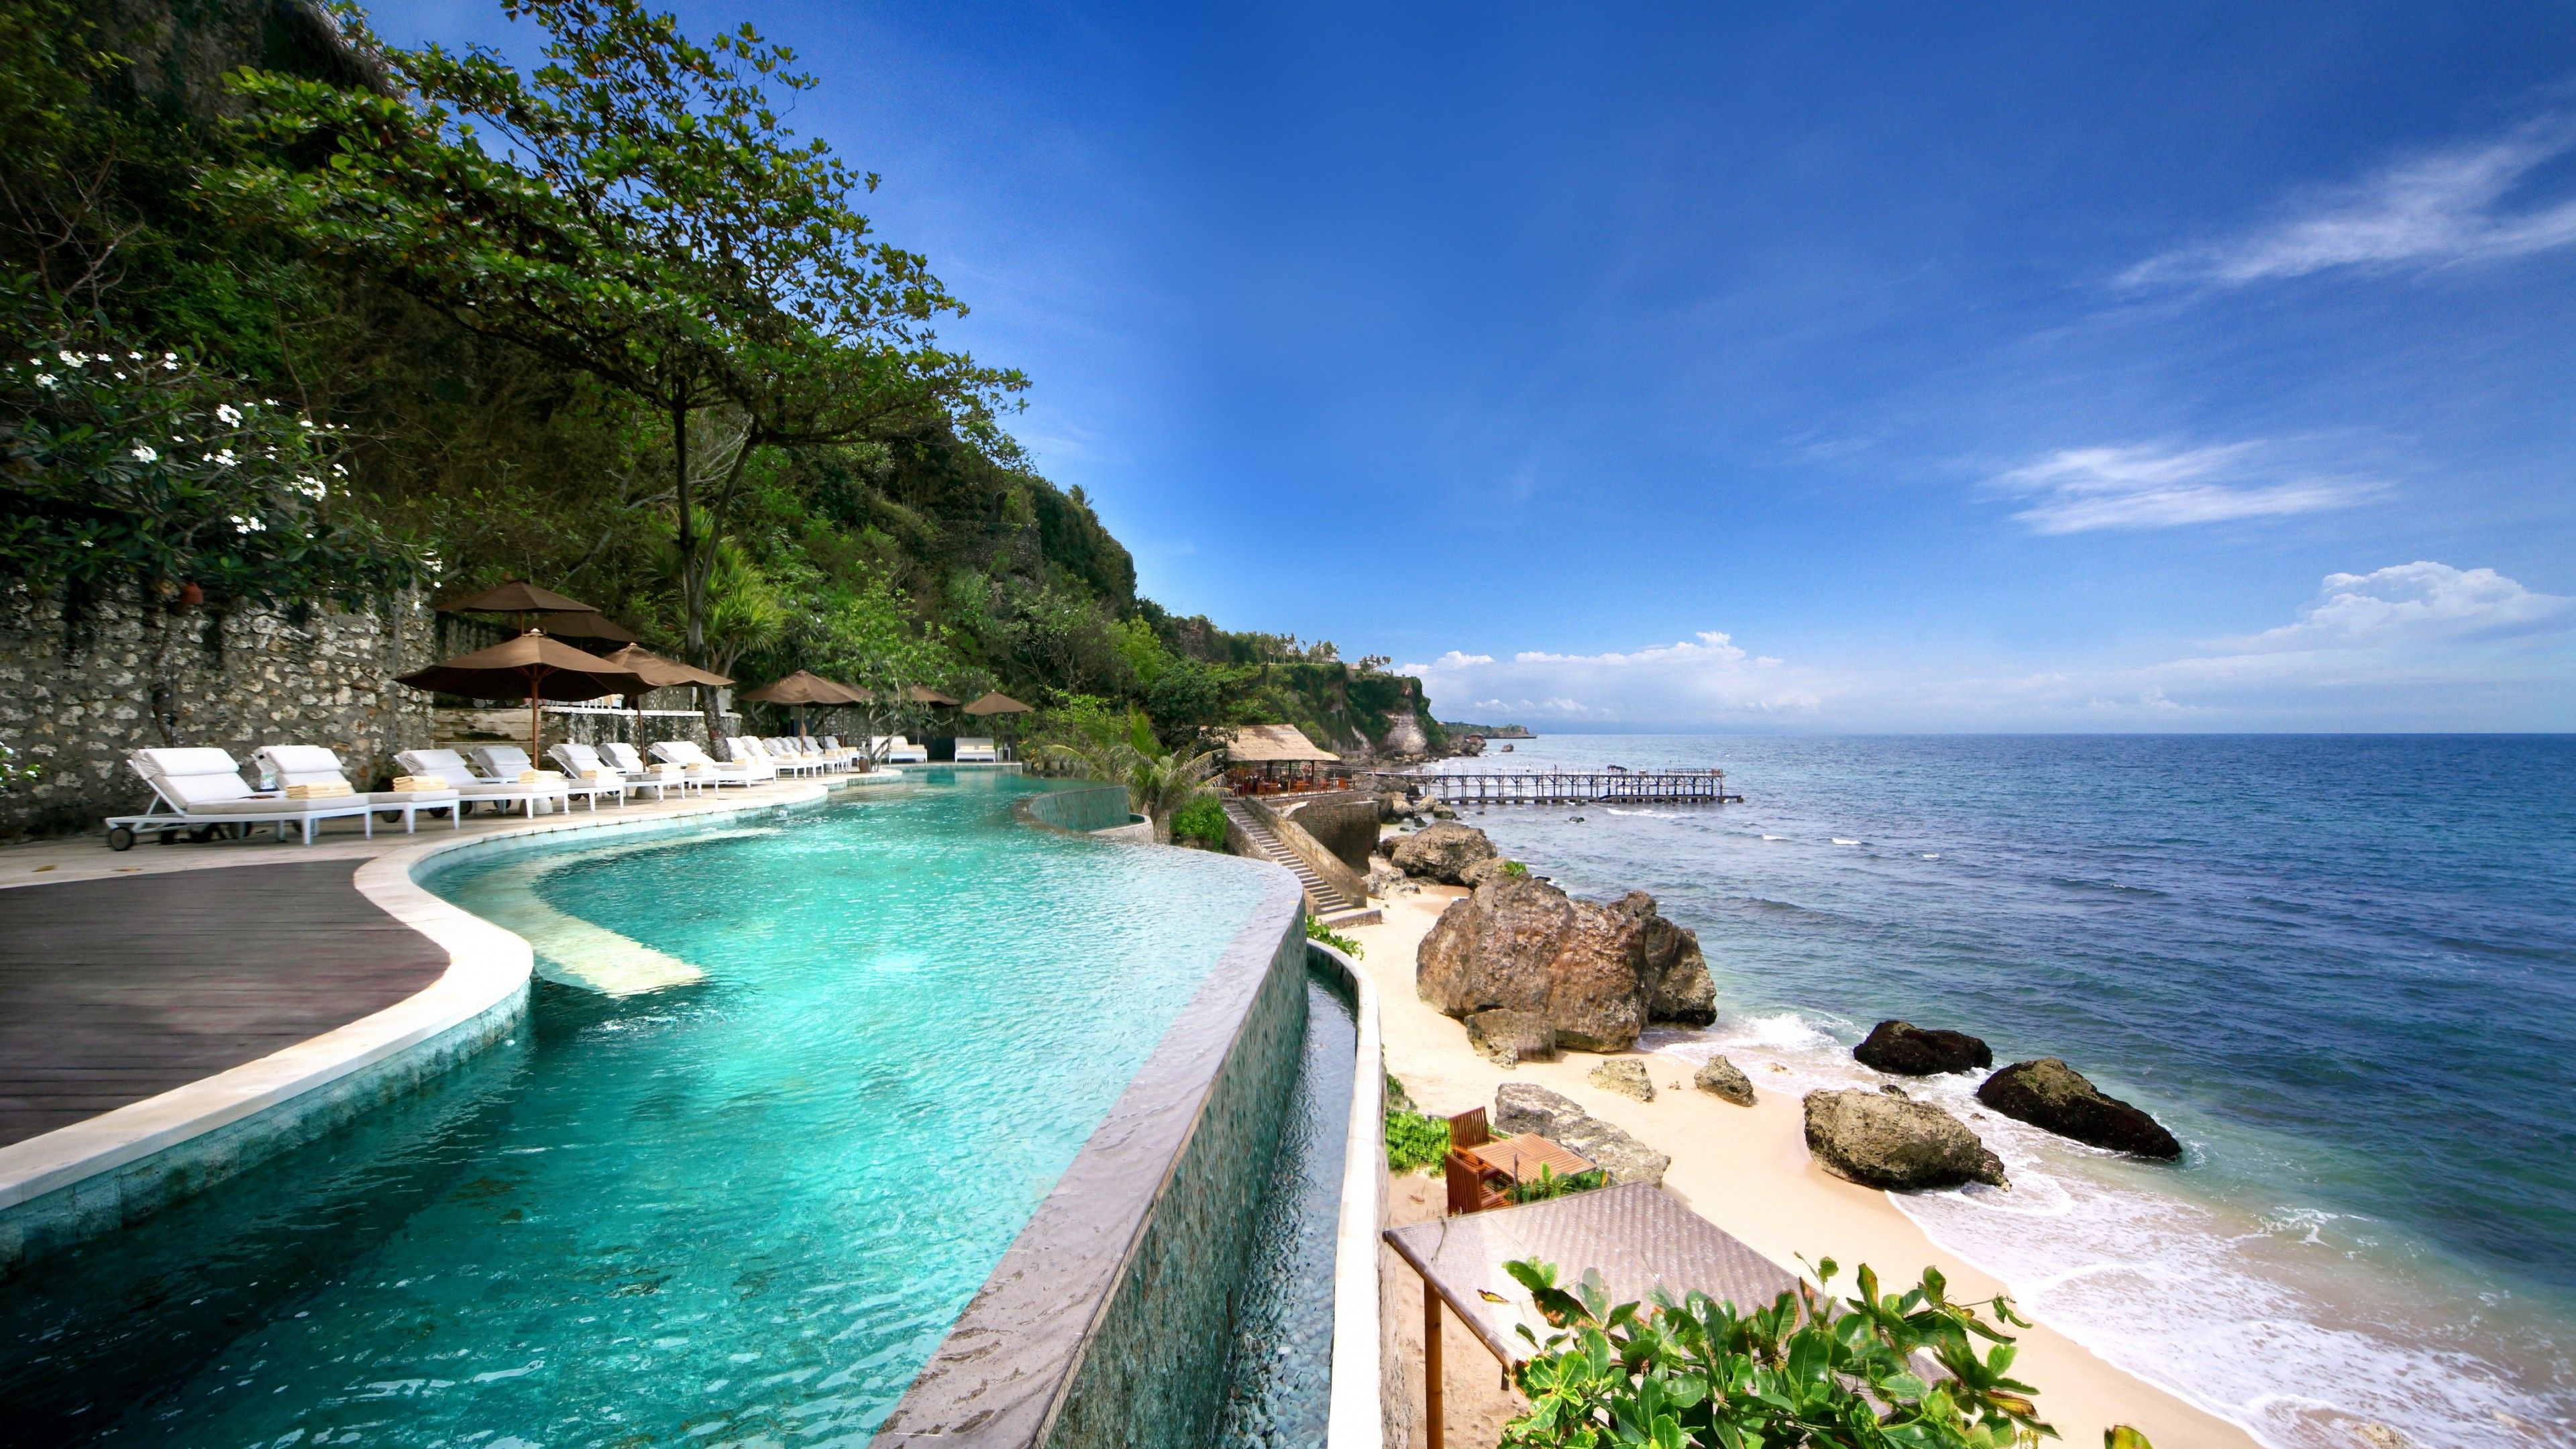 تصویر استراحتگاه ساحلی زیبا در بالی مناسب مسافران